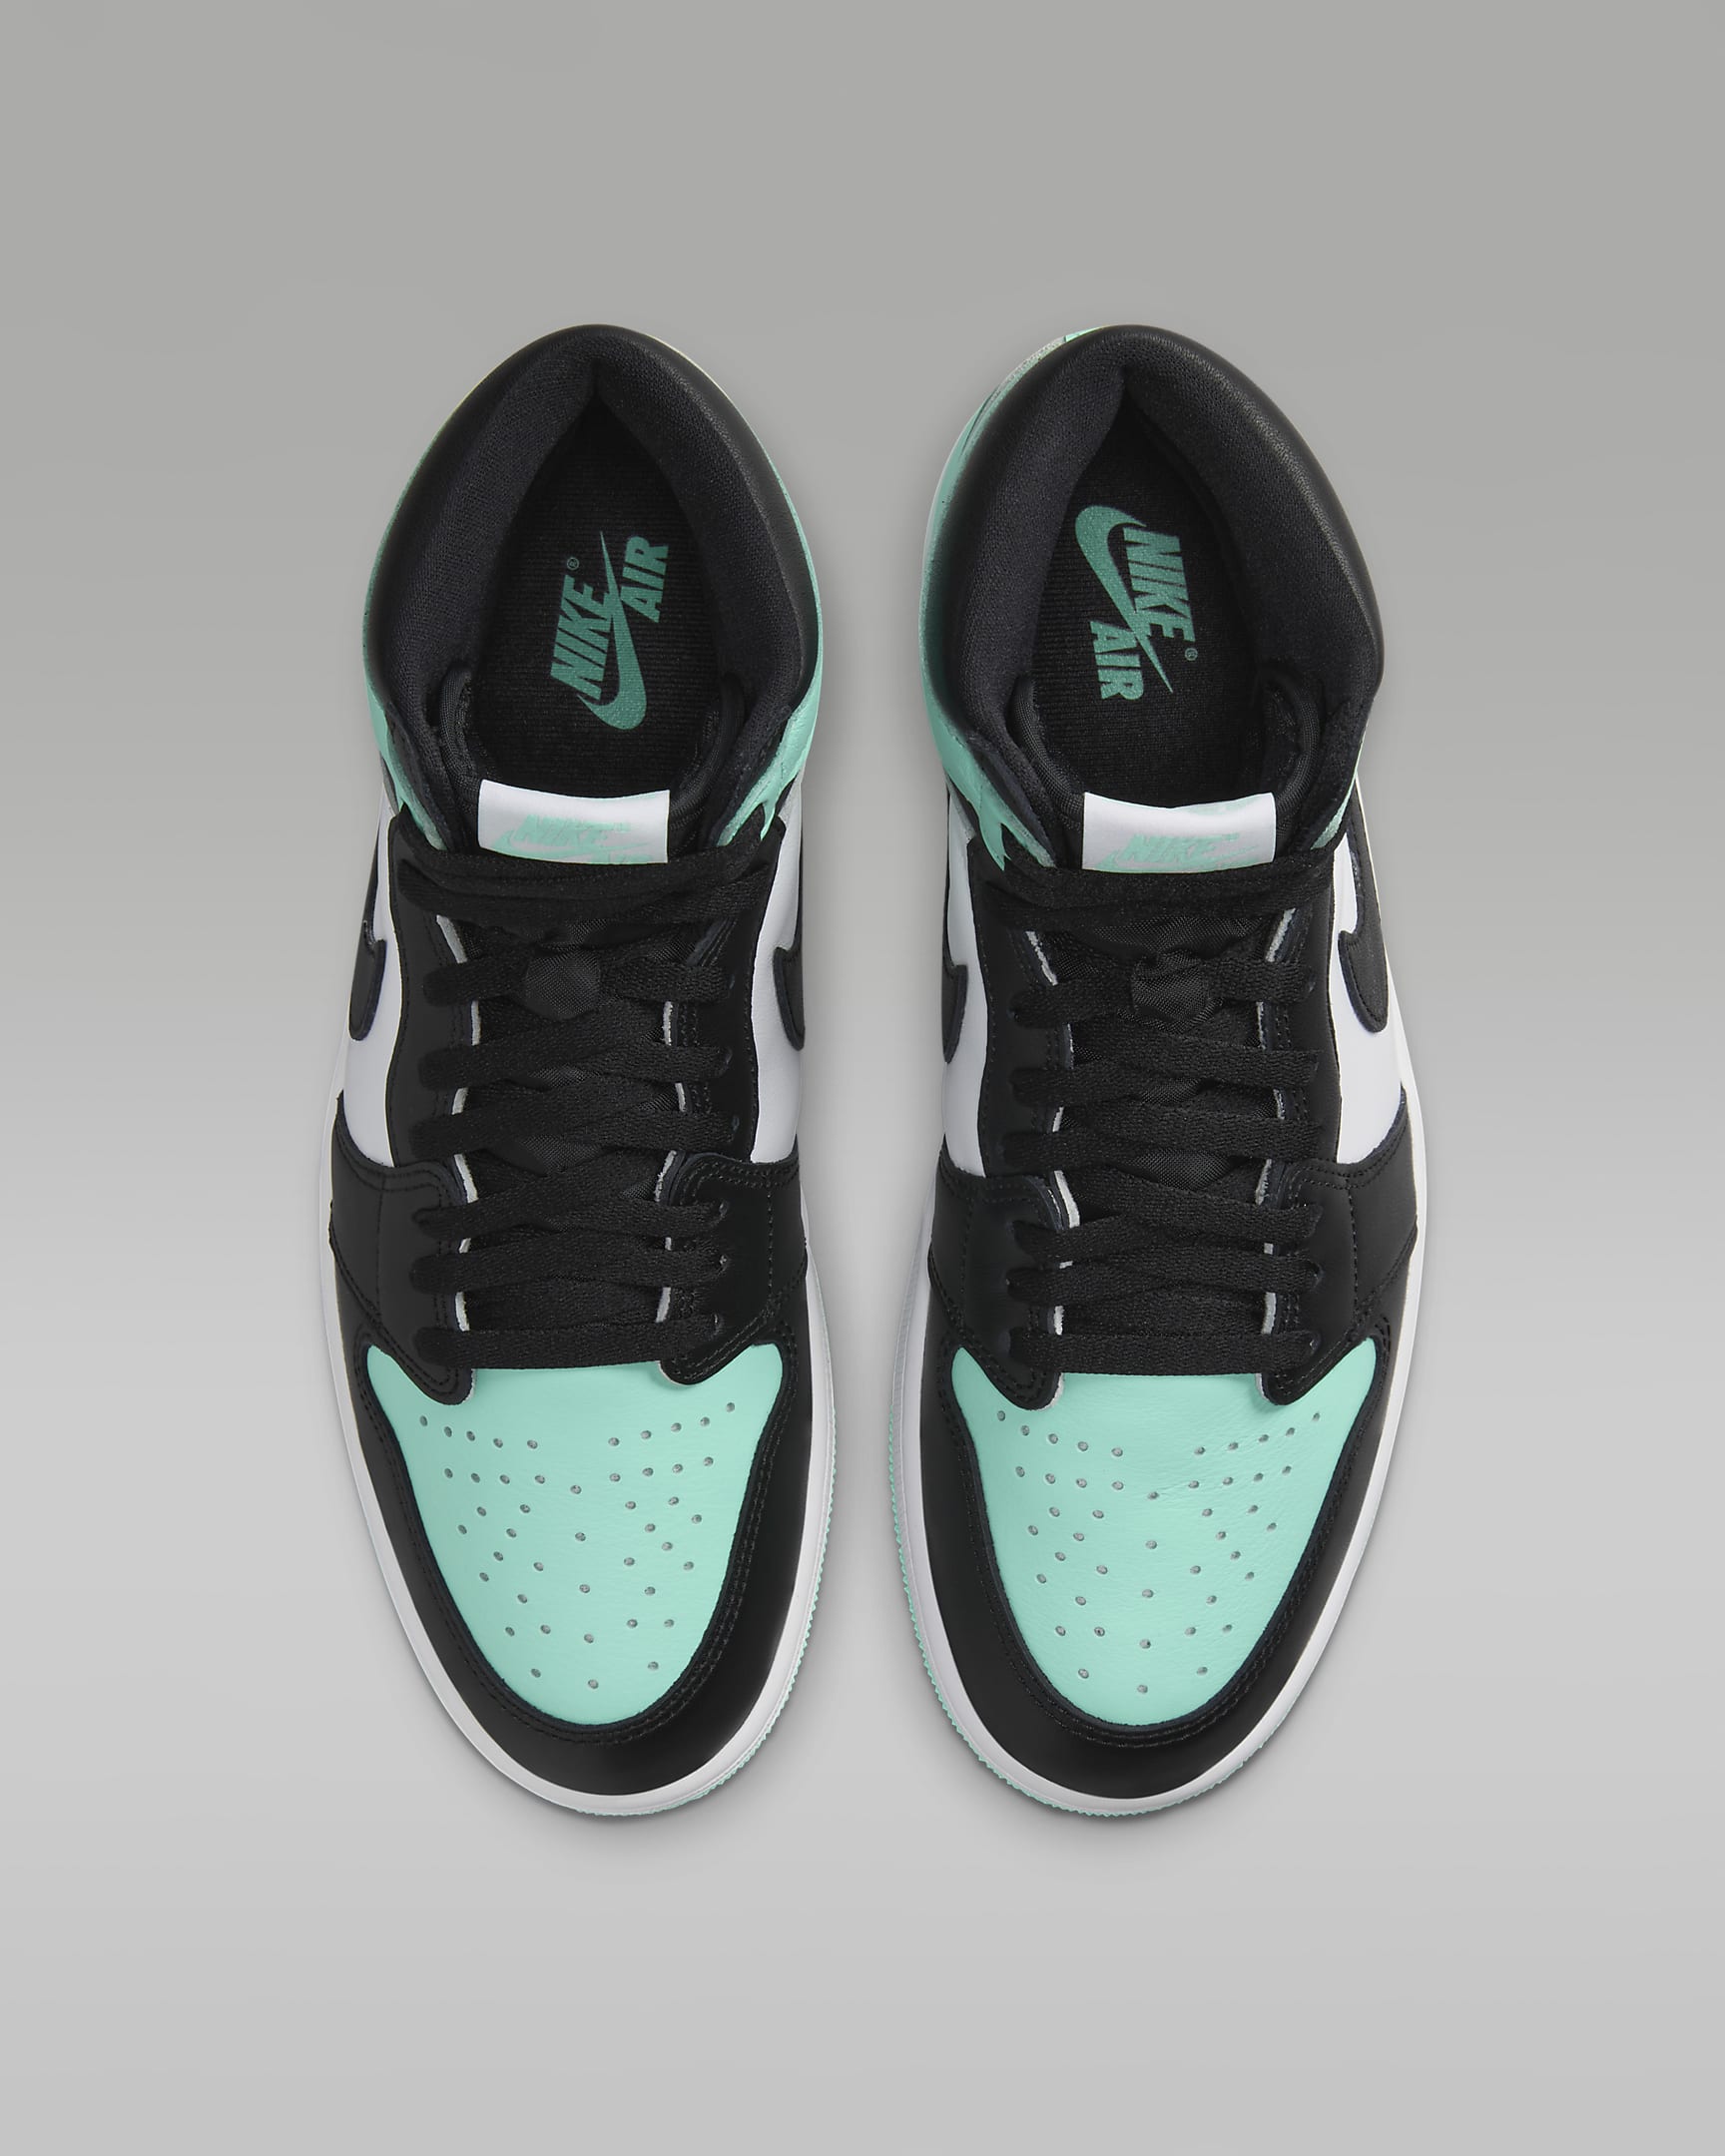 Air Jordan 1 Retro High OG Men's Shoes - White/Green Glow/Black